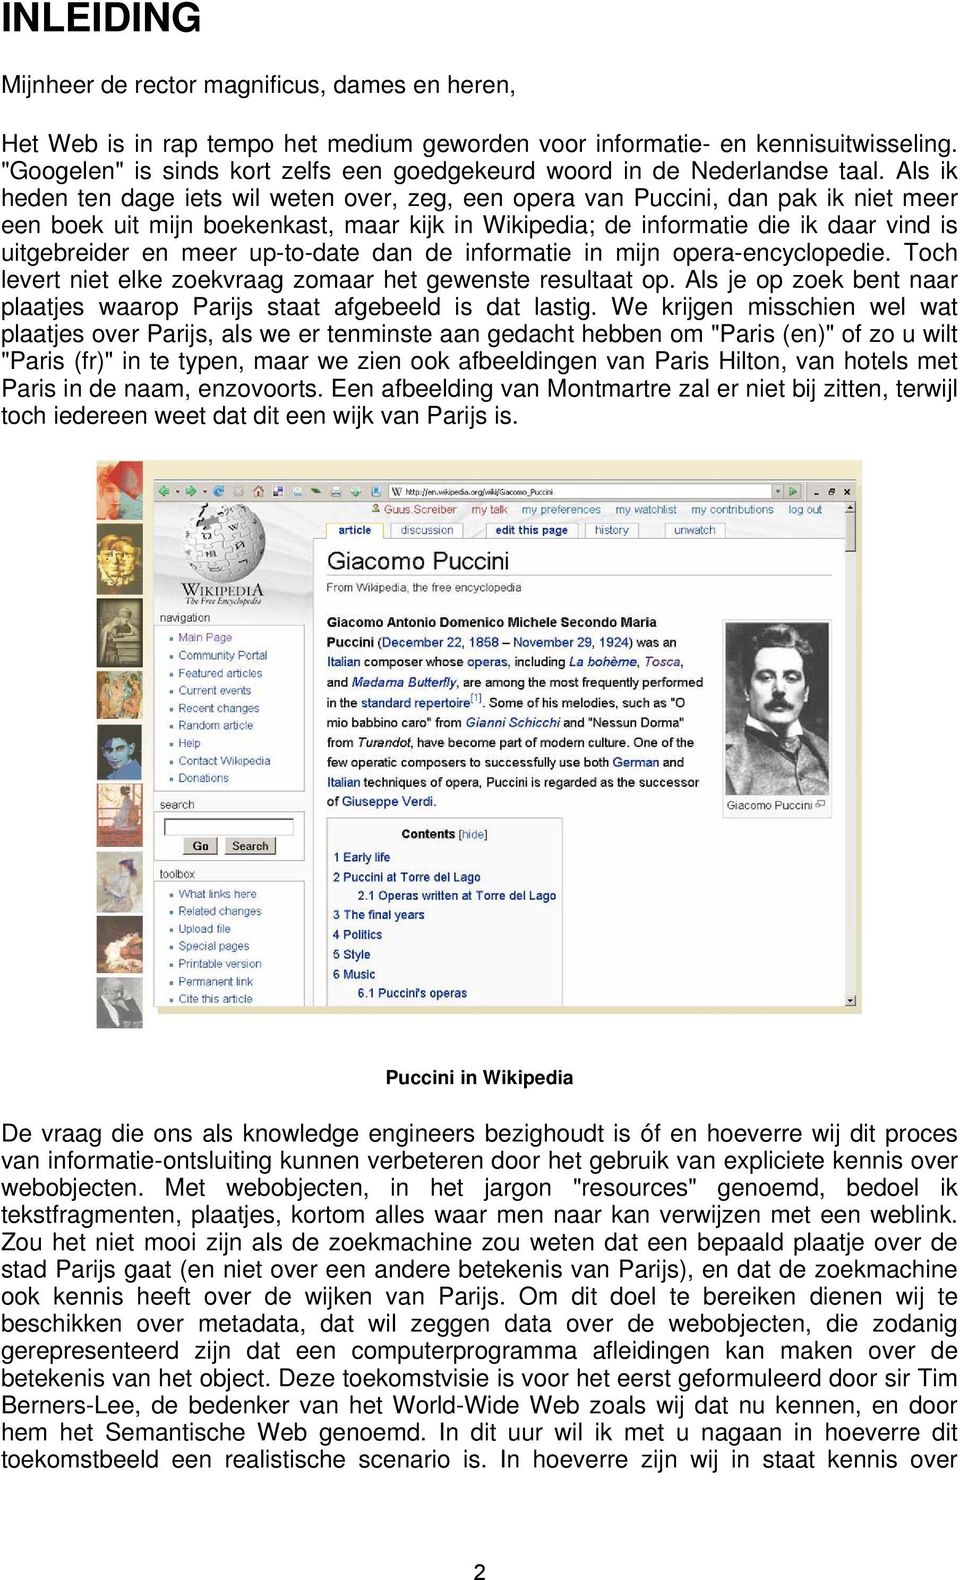 Als ik heden ten dage iets wil weten over, zeg, een opera van Puccini, dan pak ik niet meer een boek uit mijn boekenkast, maar kijk in Wikipedia; de informatie die ik daar vind is uitgebreider en